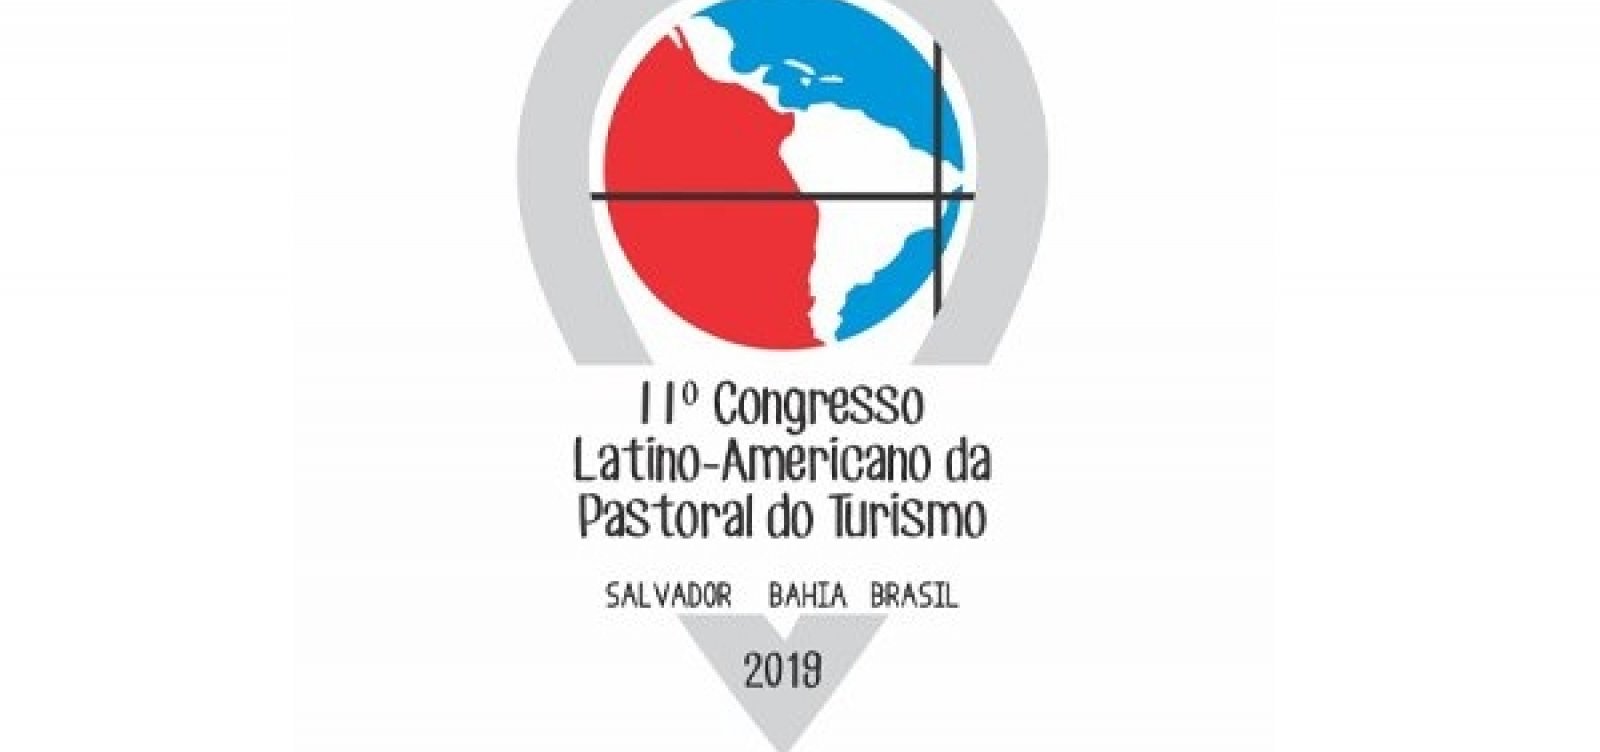 IIº Congresso Latino-Americano da Pastoral do Turismo em Salvador começa hoje